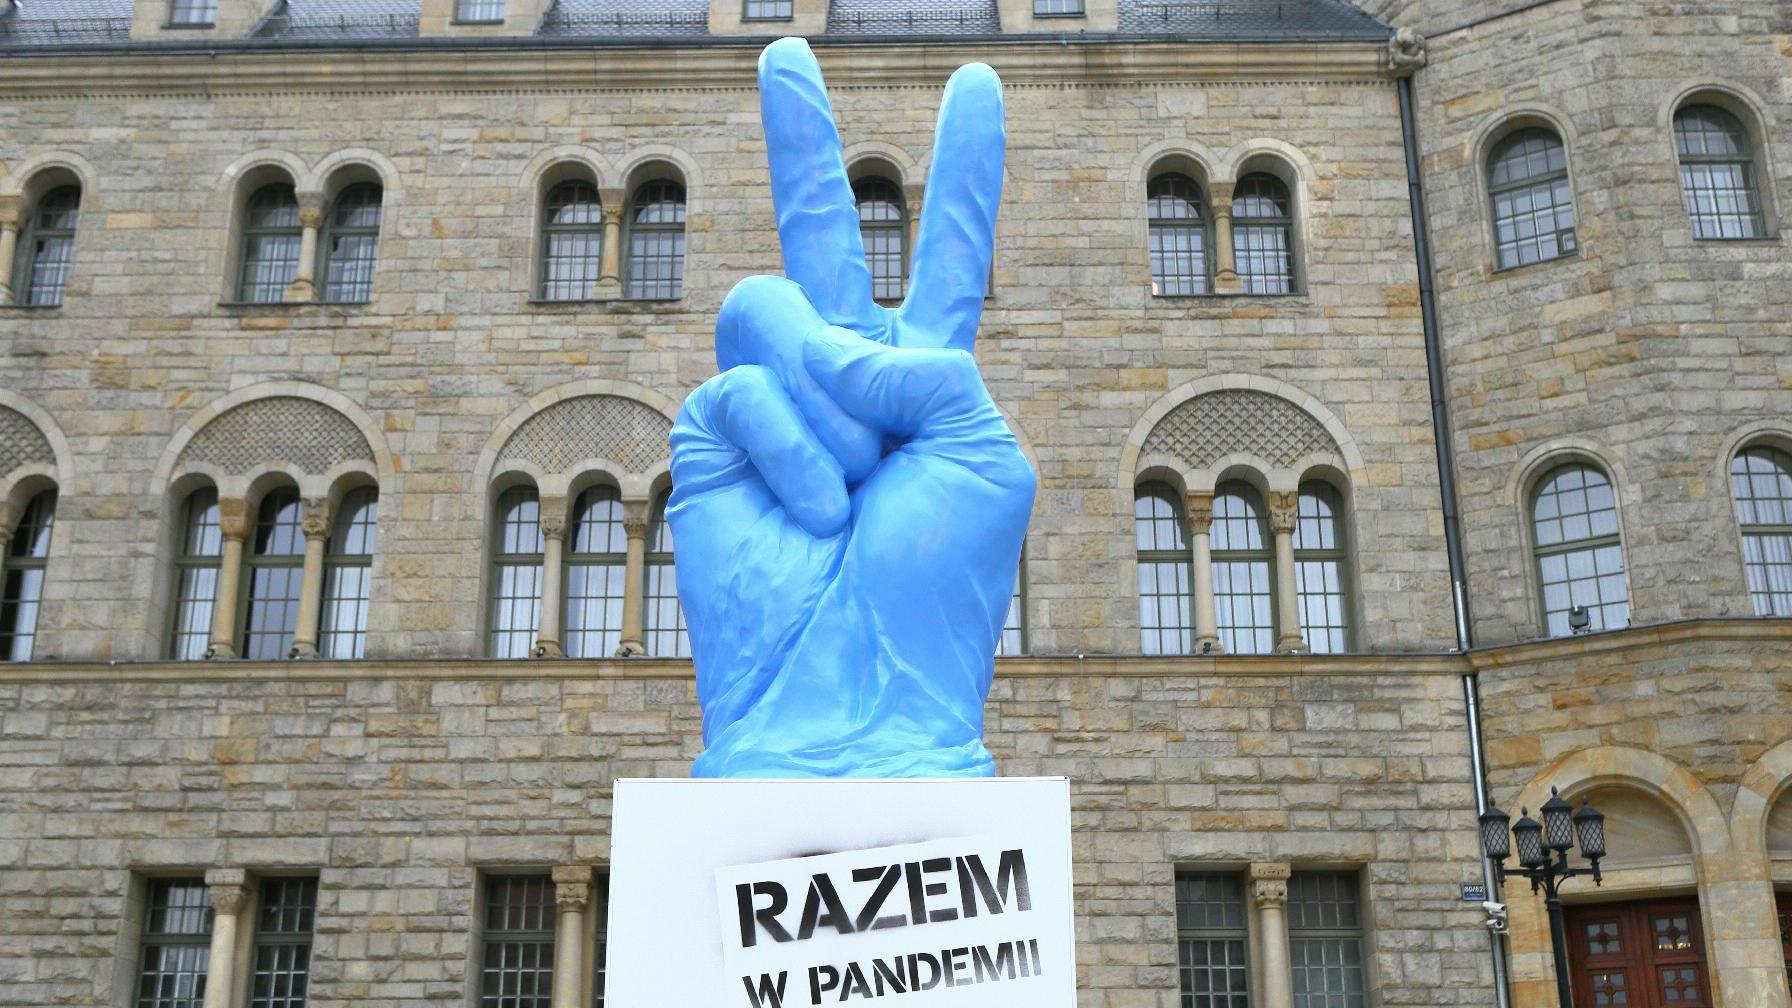 Przed Zamkiem stanęła rzeźba "Razem w pandemii", fot. M.Kaczyński/CK Zamek. - grafika artykułu